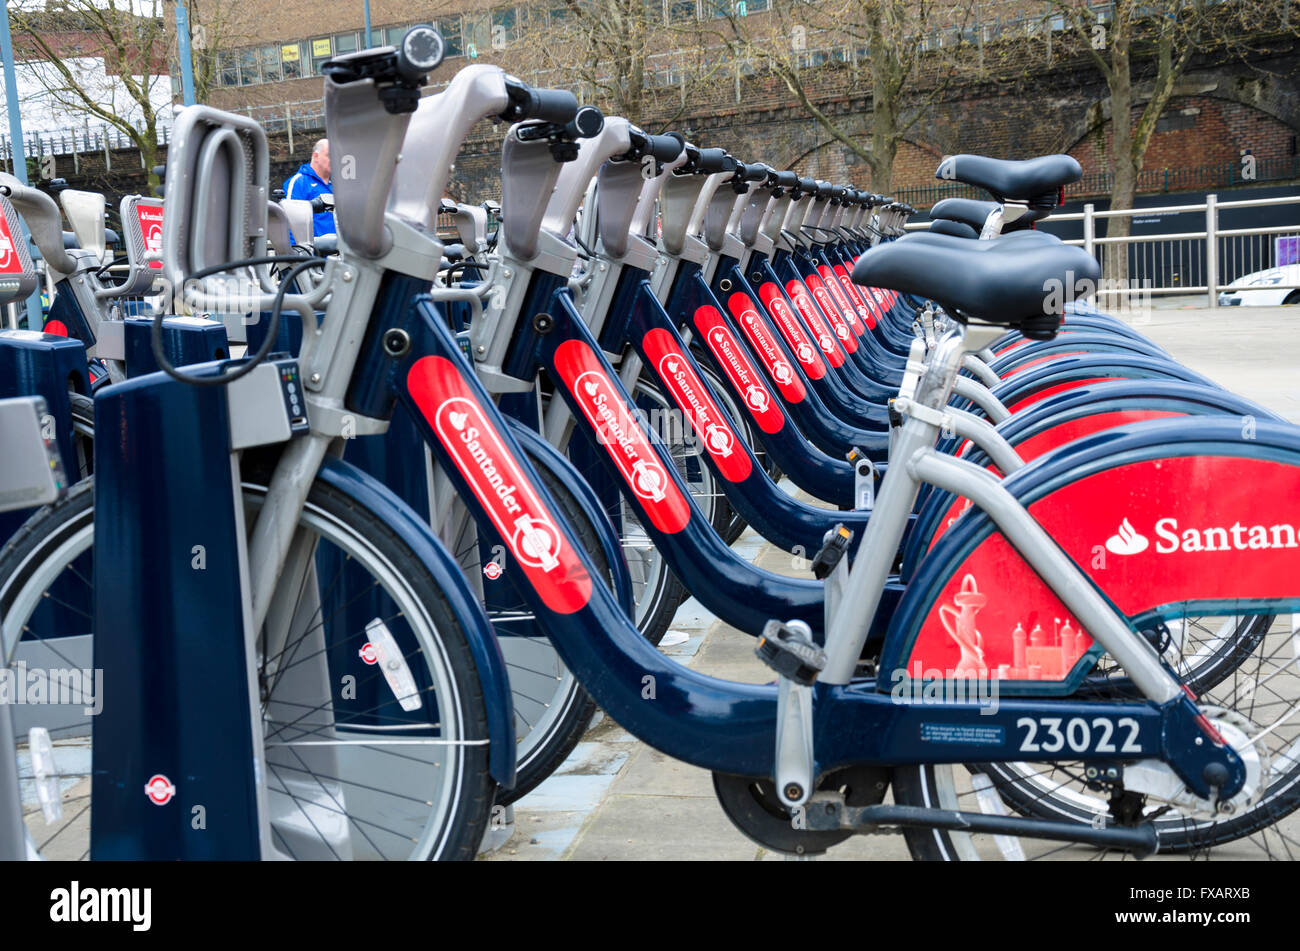 'Boris' prêt de vélos en location à la ville blanche dans une station Shepherds Bush, Londres. Banque D'Images